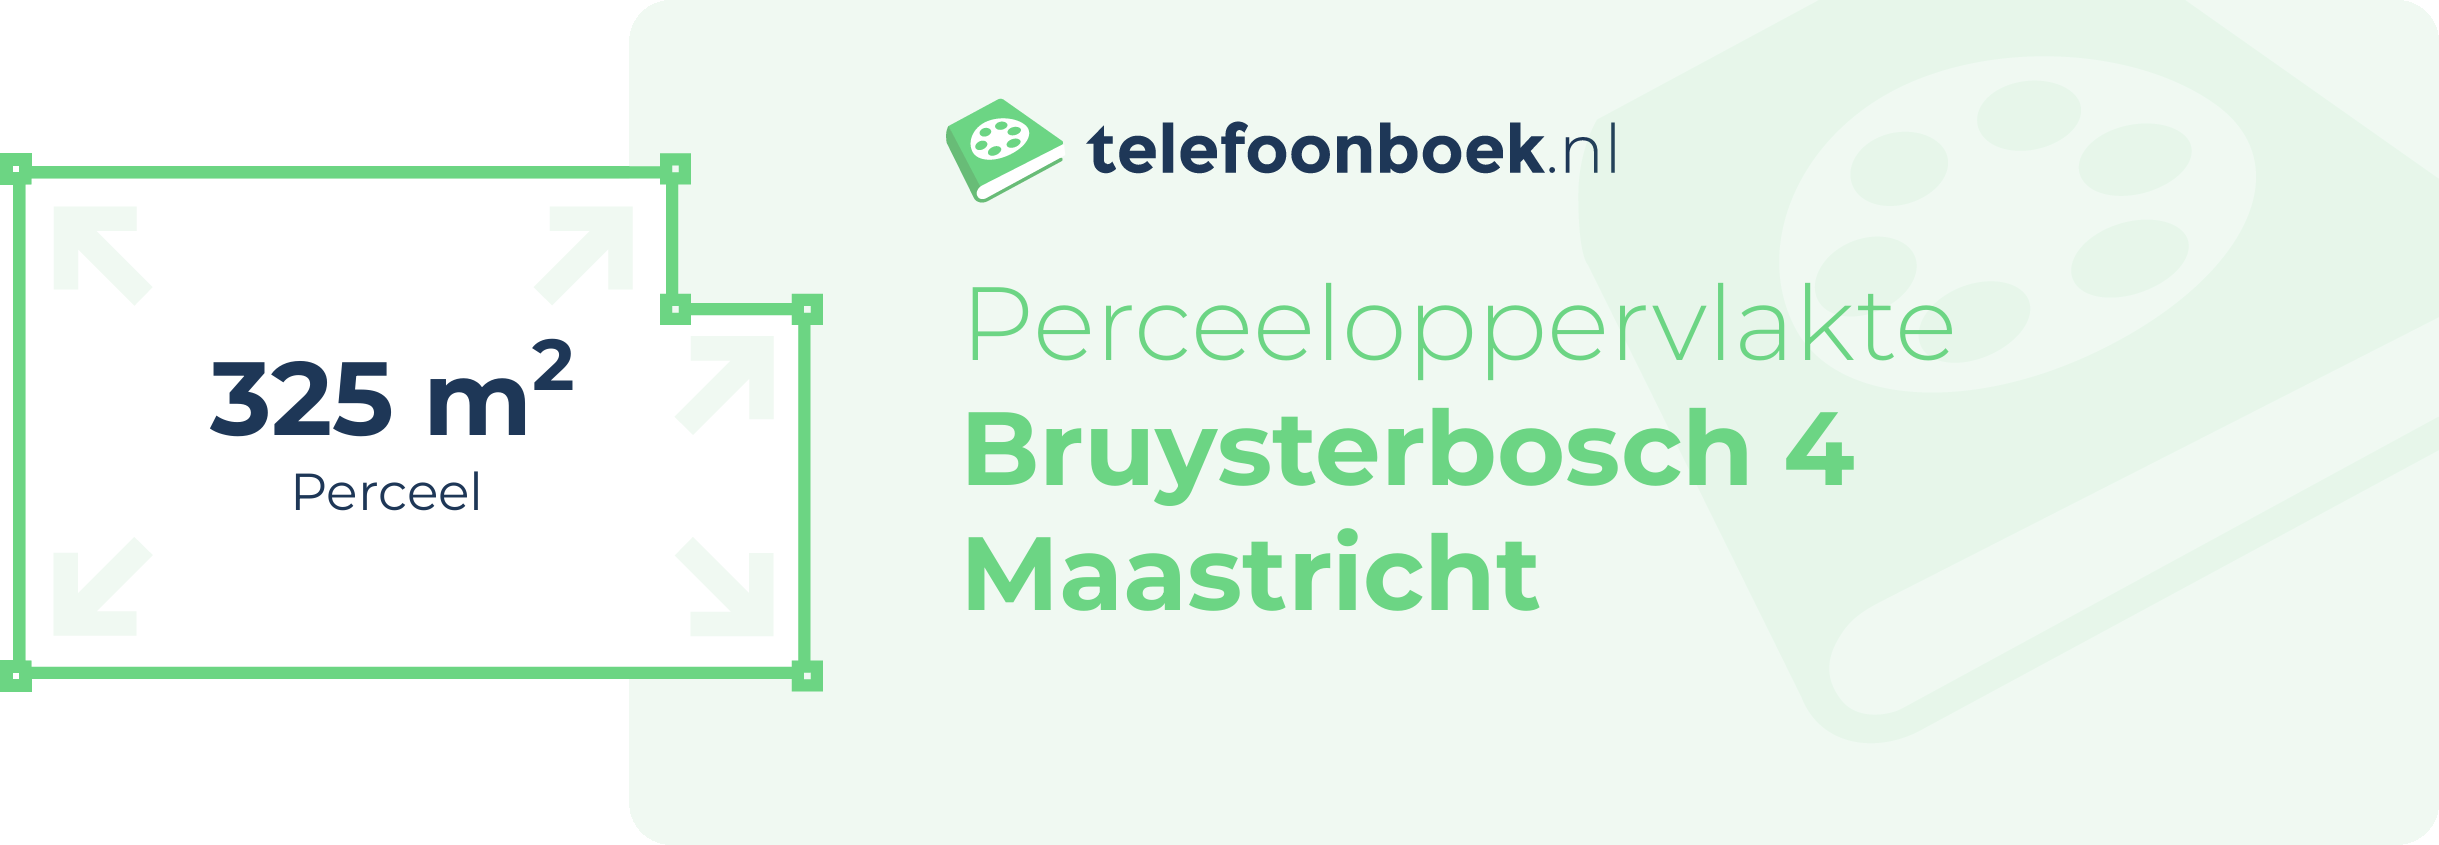 Perceeloppervlakte Bruysterbosch 4 Maastricht